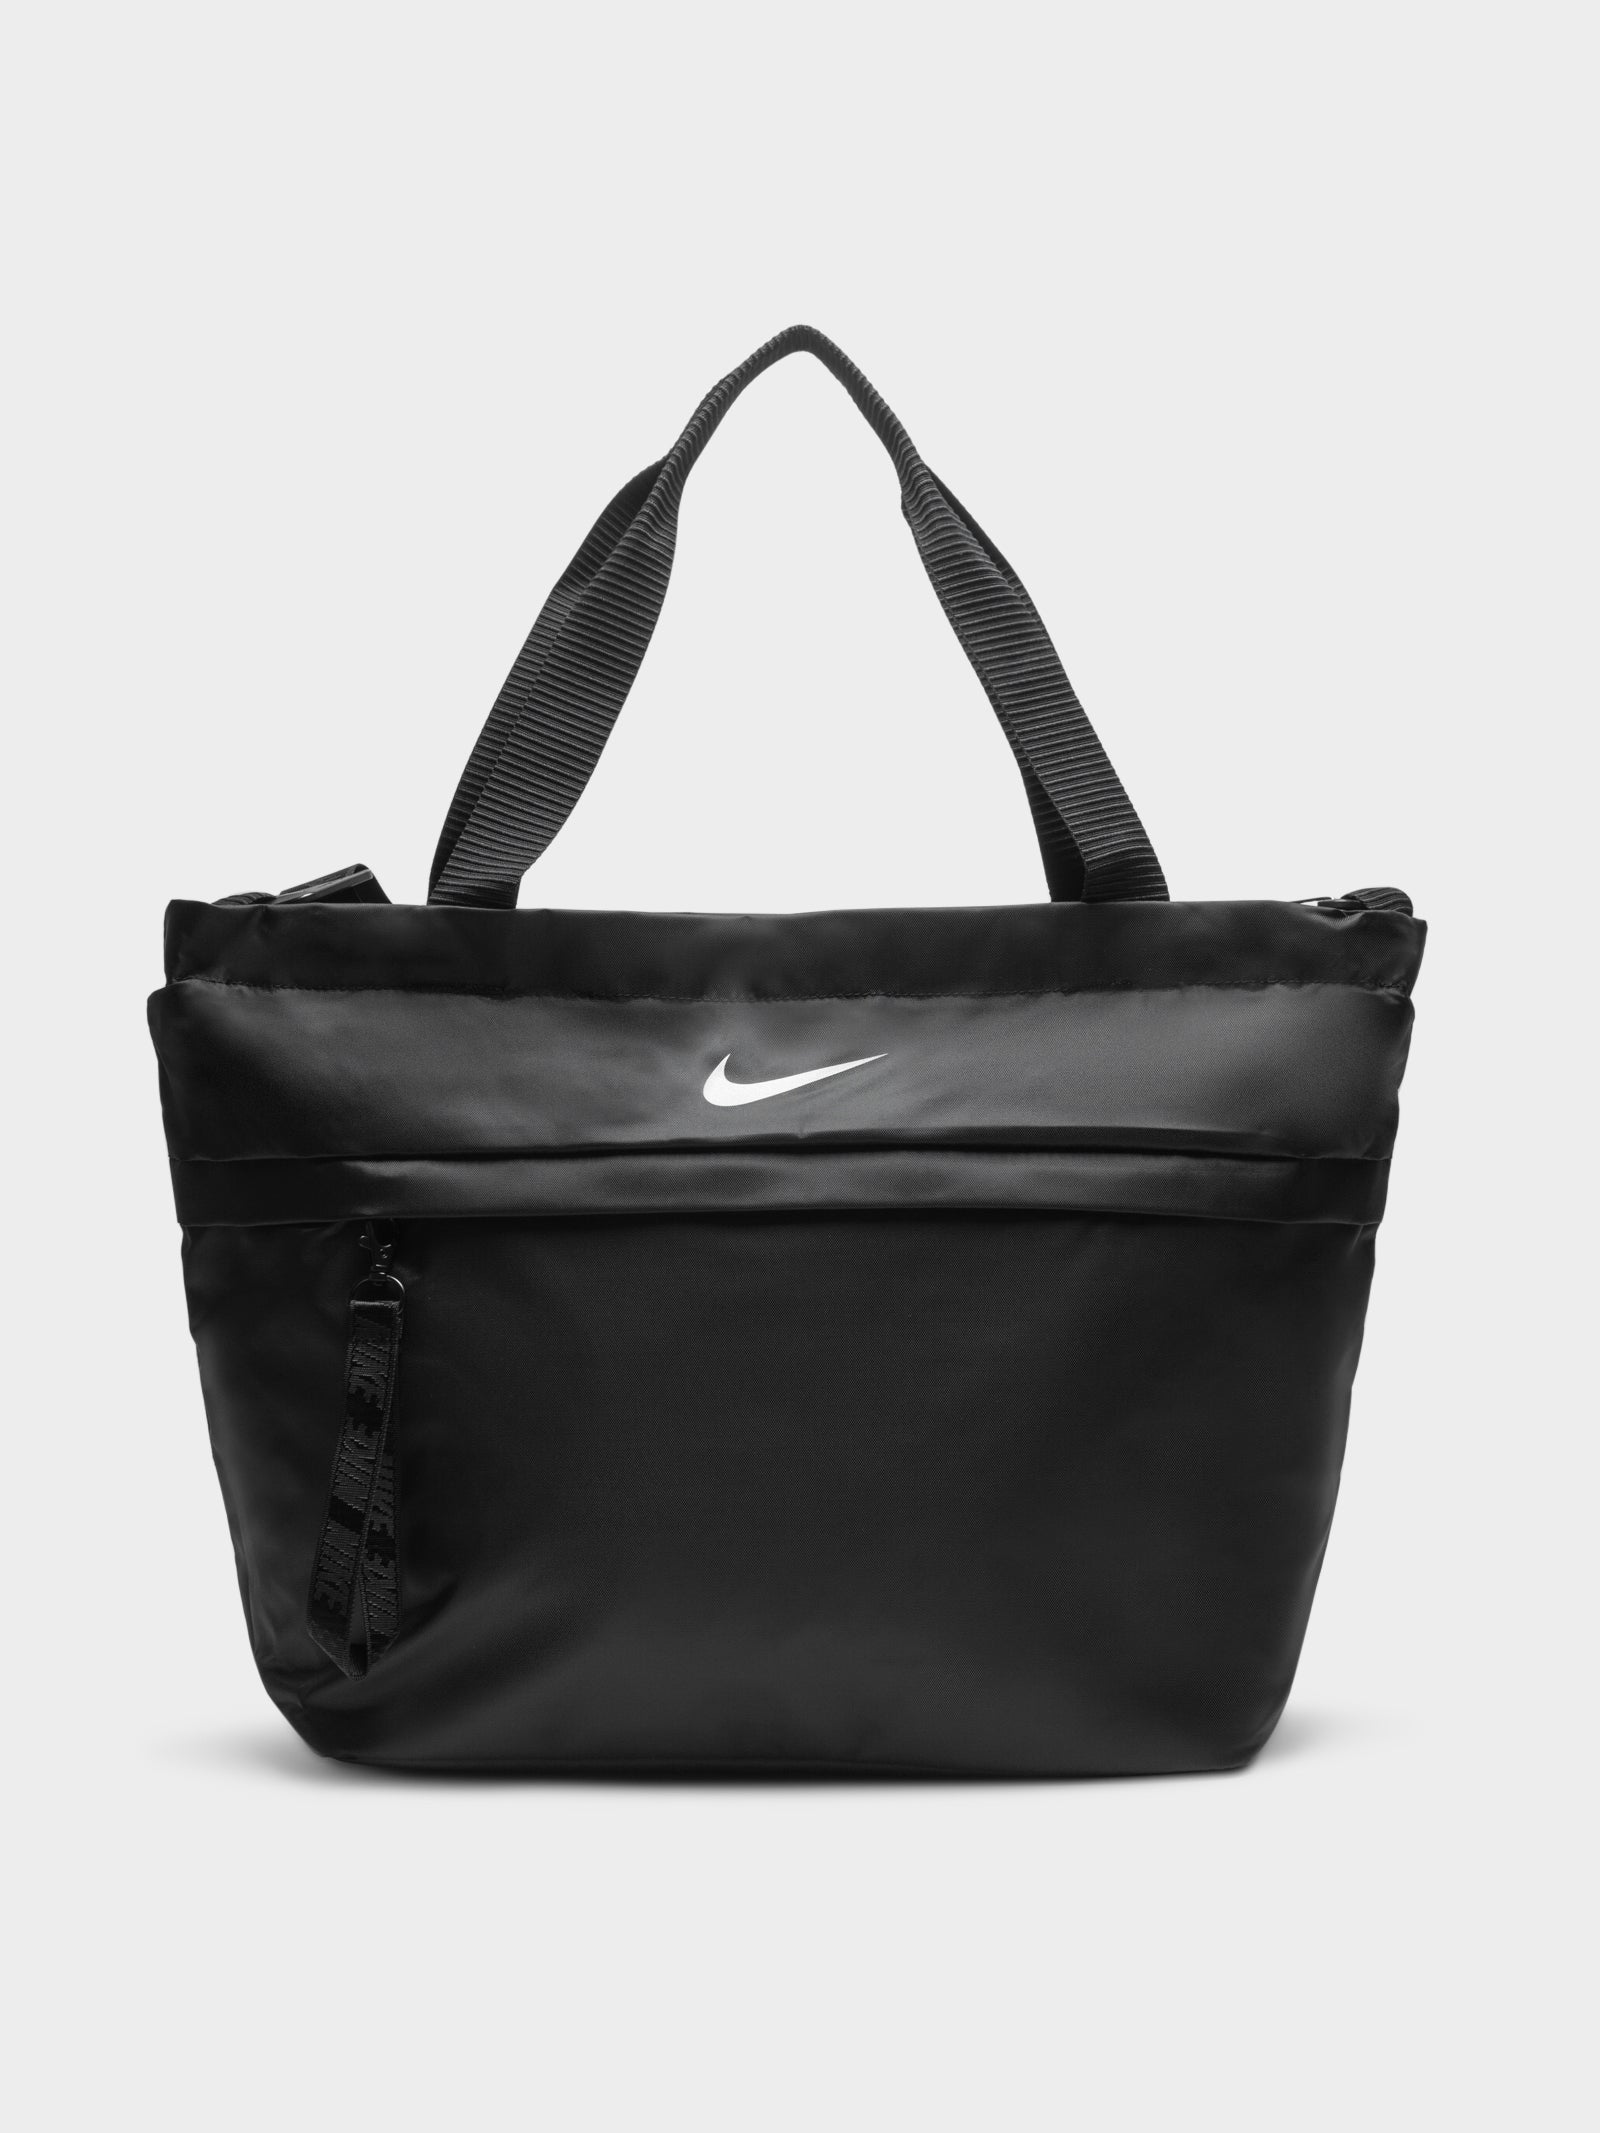 Nike Sportswear Tote in Black - Glue Store